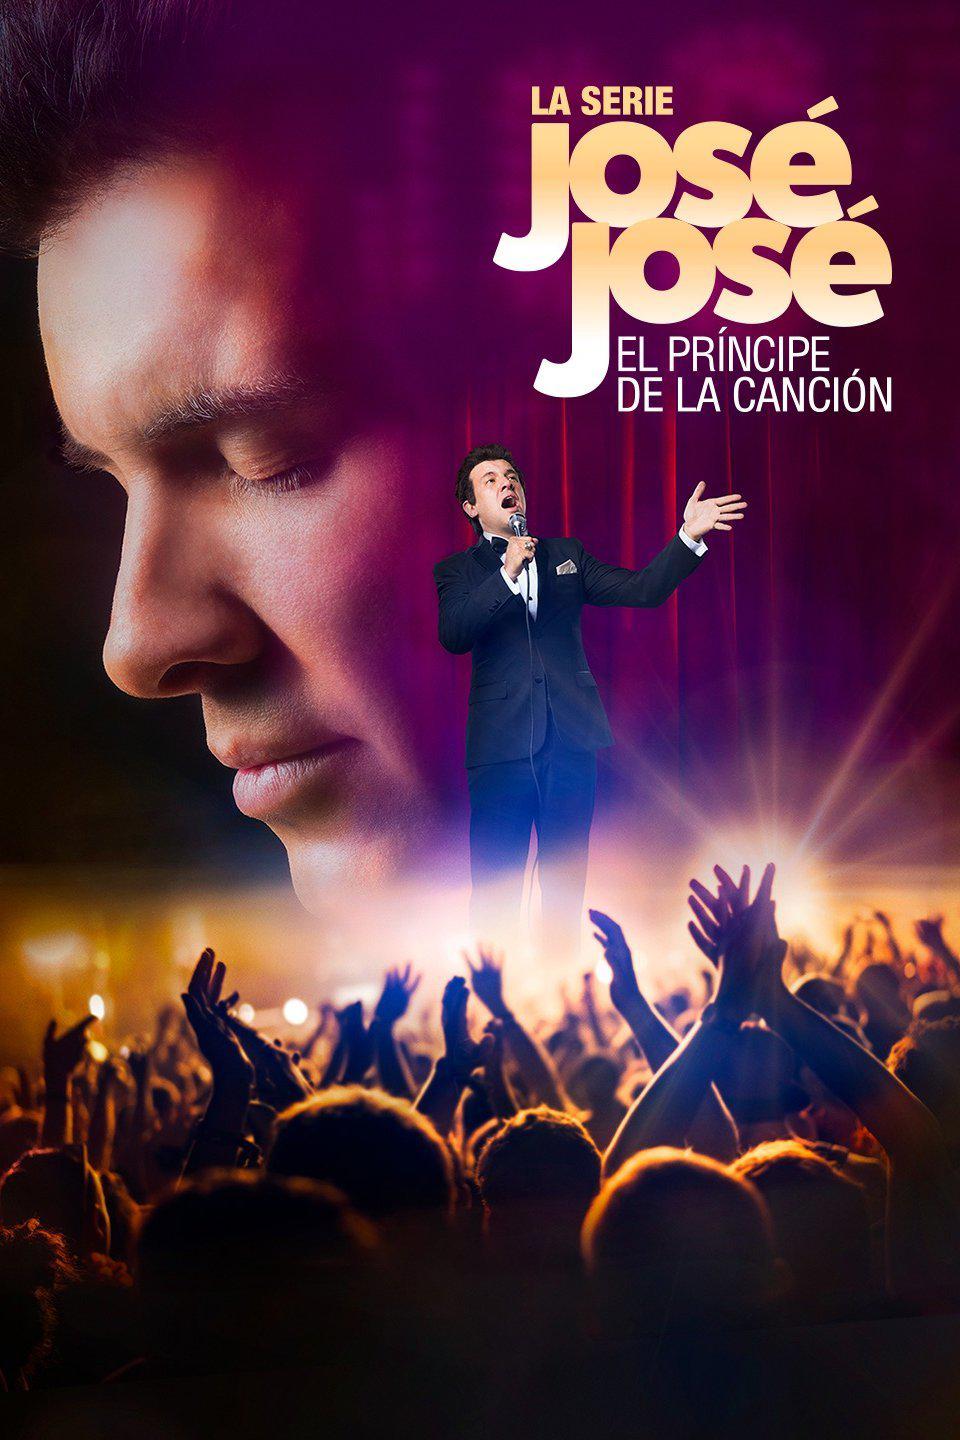 TV ratings for José José, El Príncipe De La Canción in Poland. Telemundo TV series